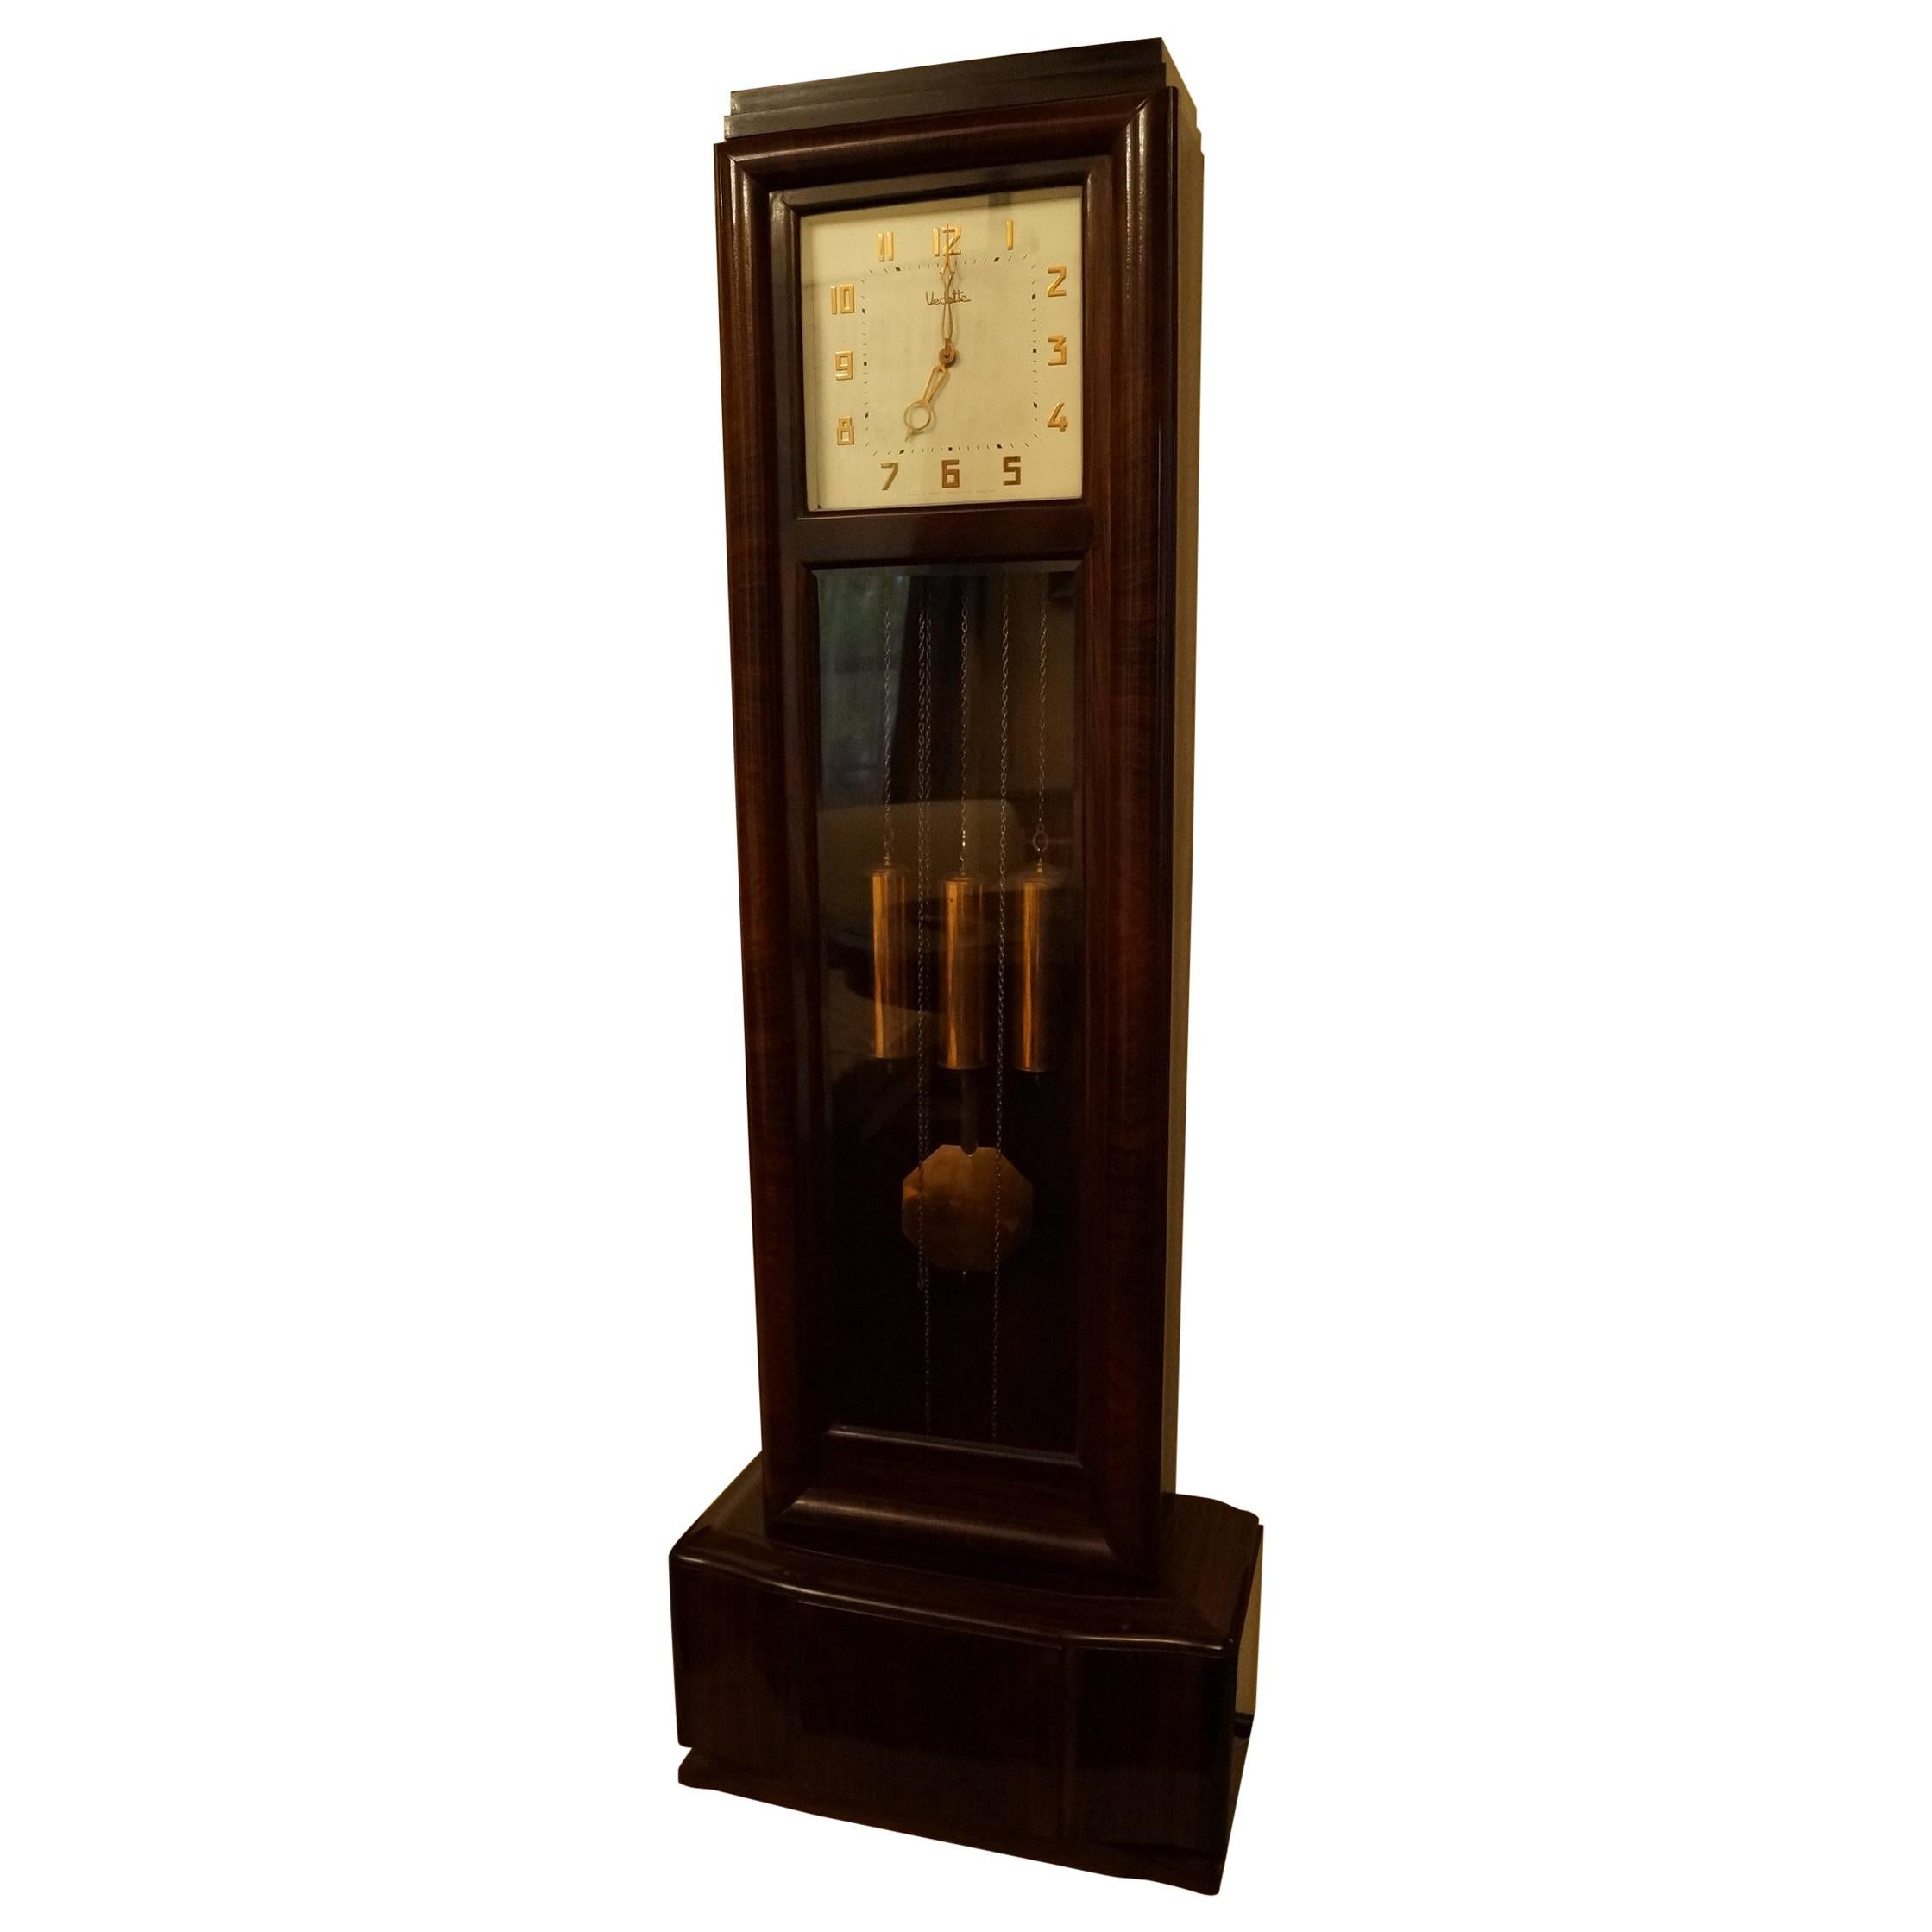 Atr Deco Quarter Clock, 1930